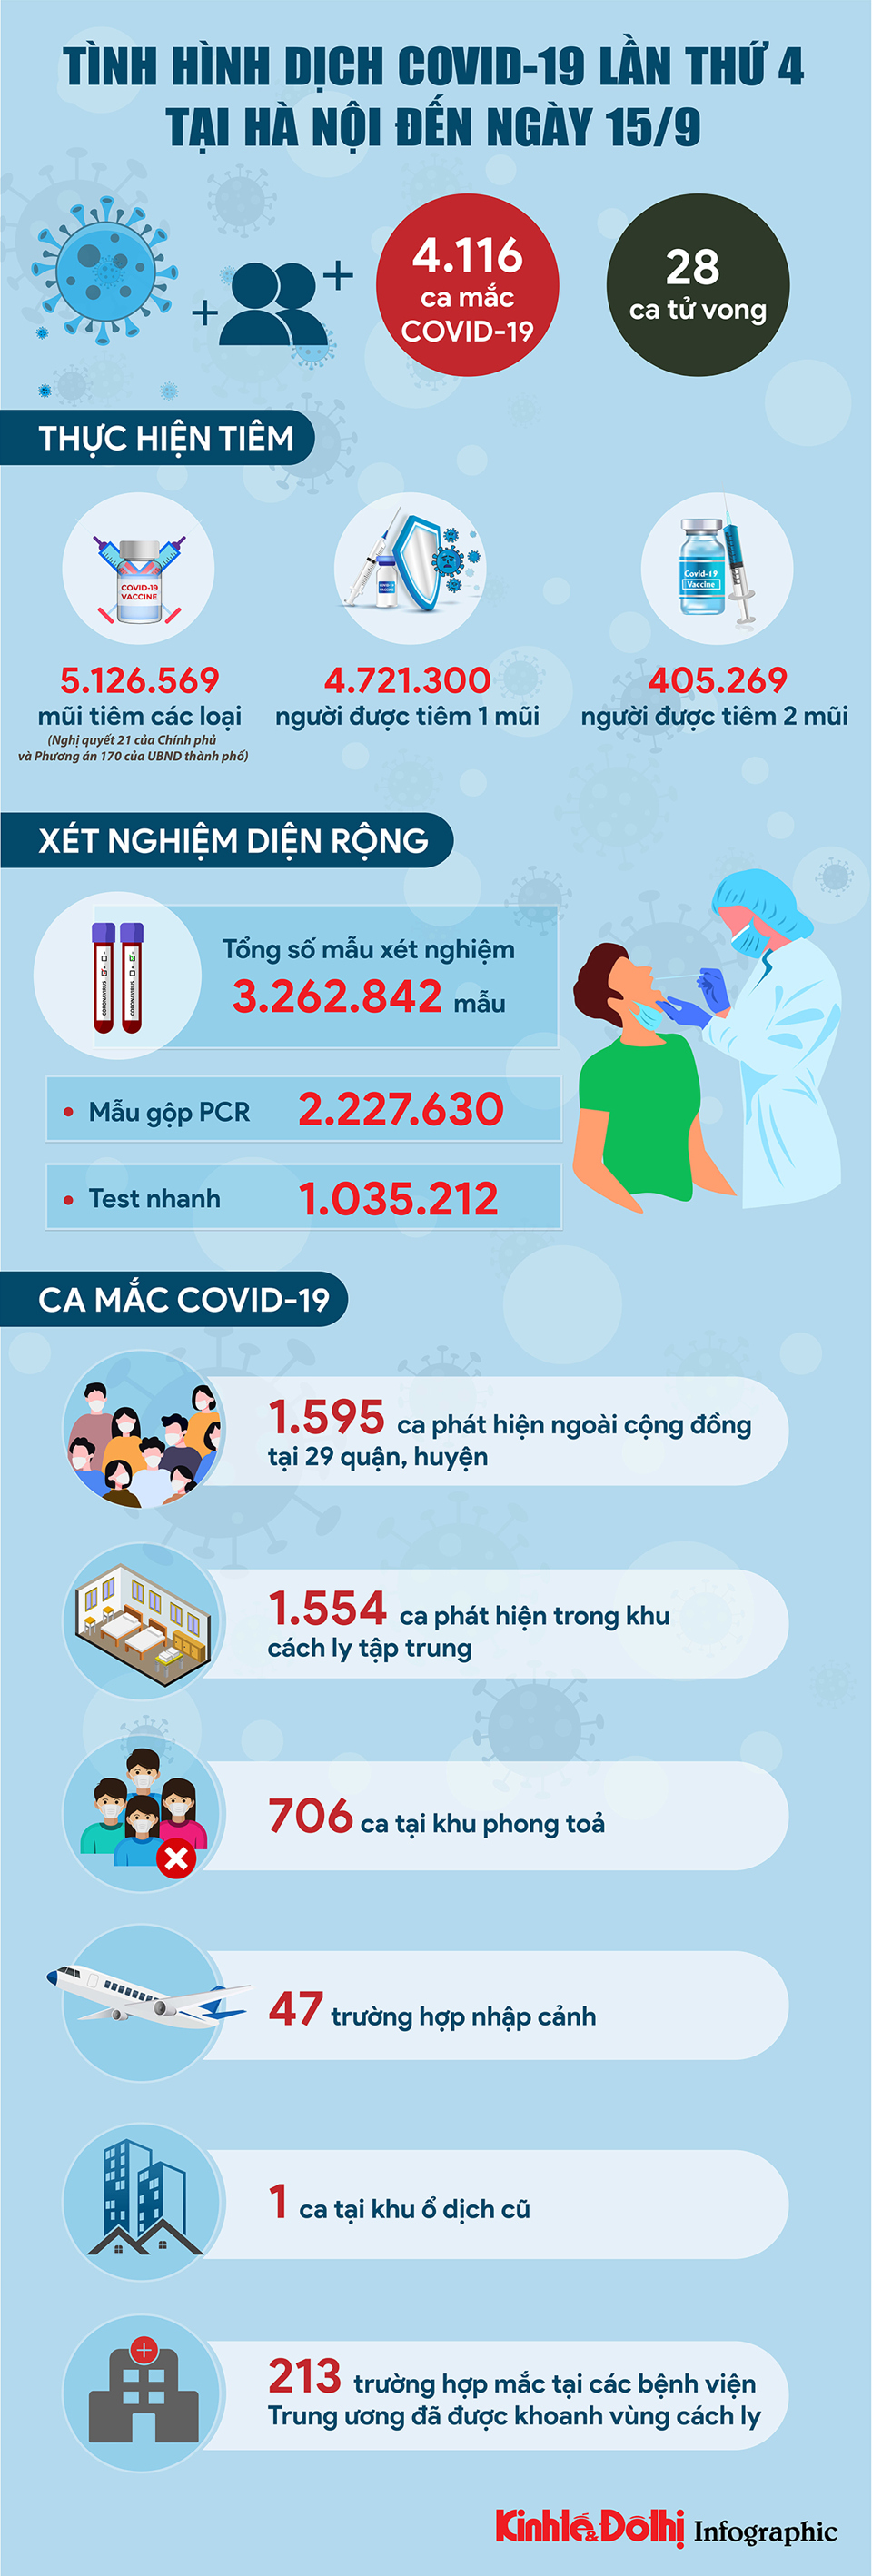 [Infographic] Tình hình dịch Covid-19 lần thứ 4 tại Hà Nội ngày 15/9 - Ảnh 1